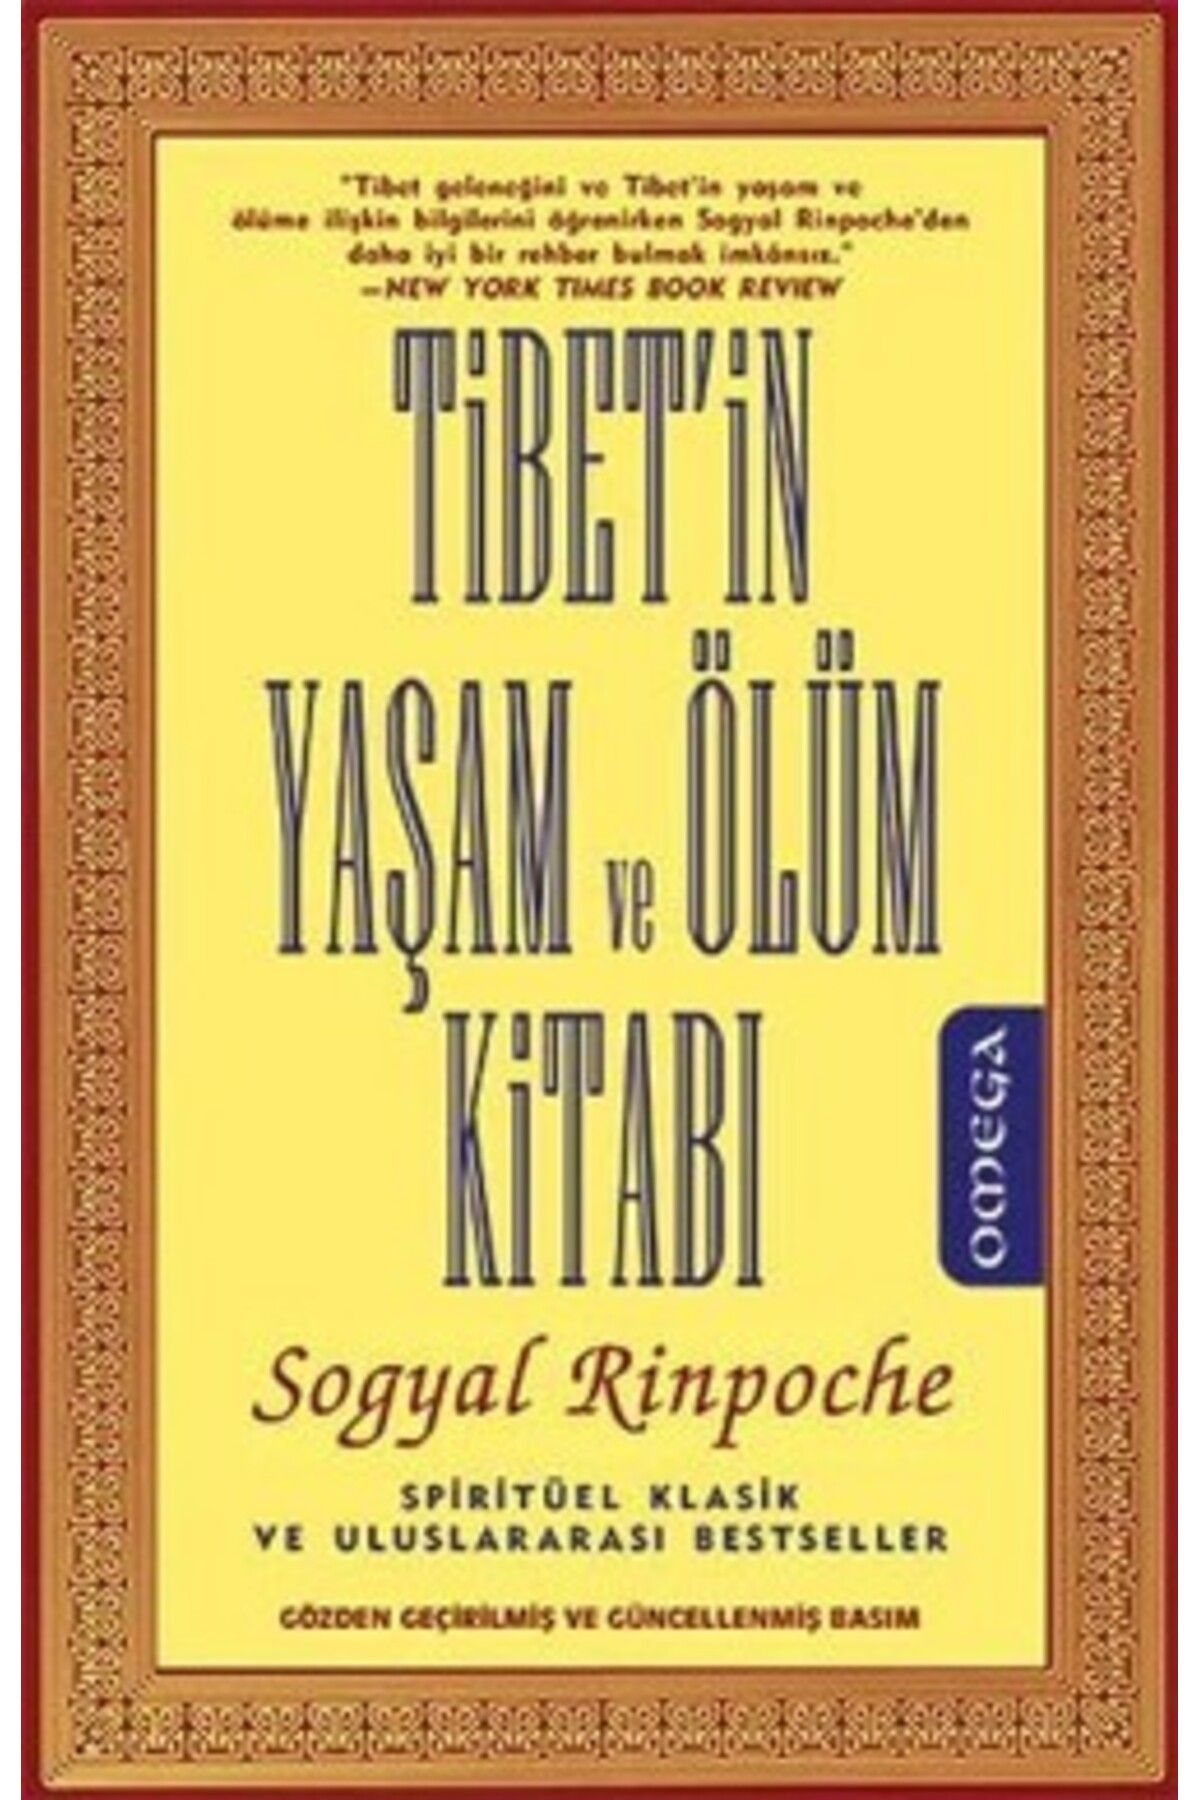 Omega Tibet'in Yaşam ve Ölüm Kitabı kitabı - Sogyal Rinpoche - Omega